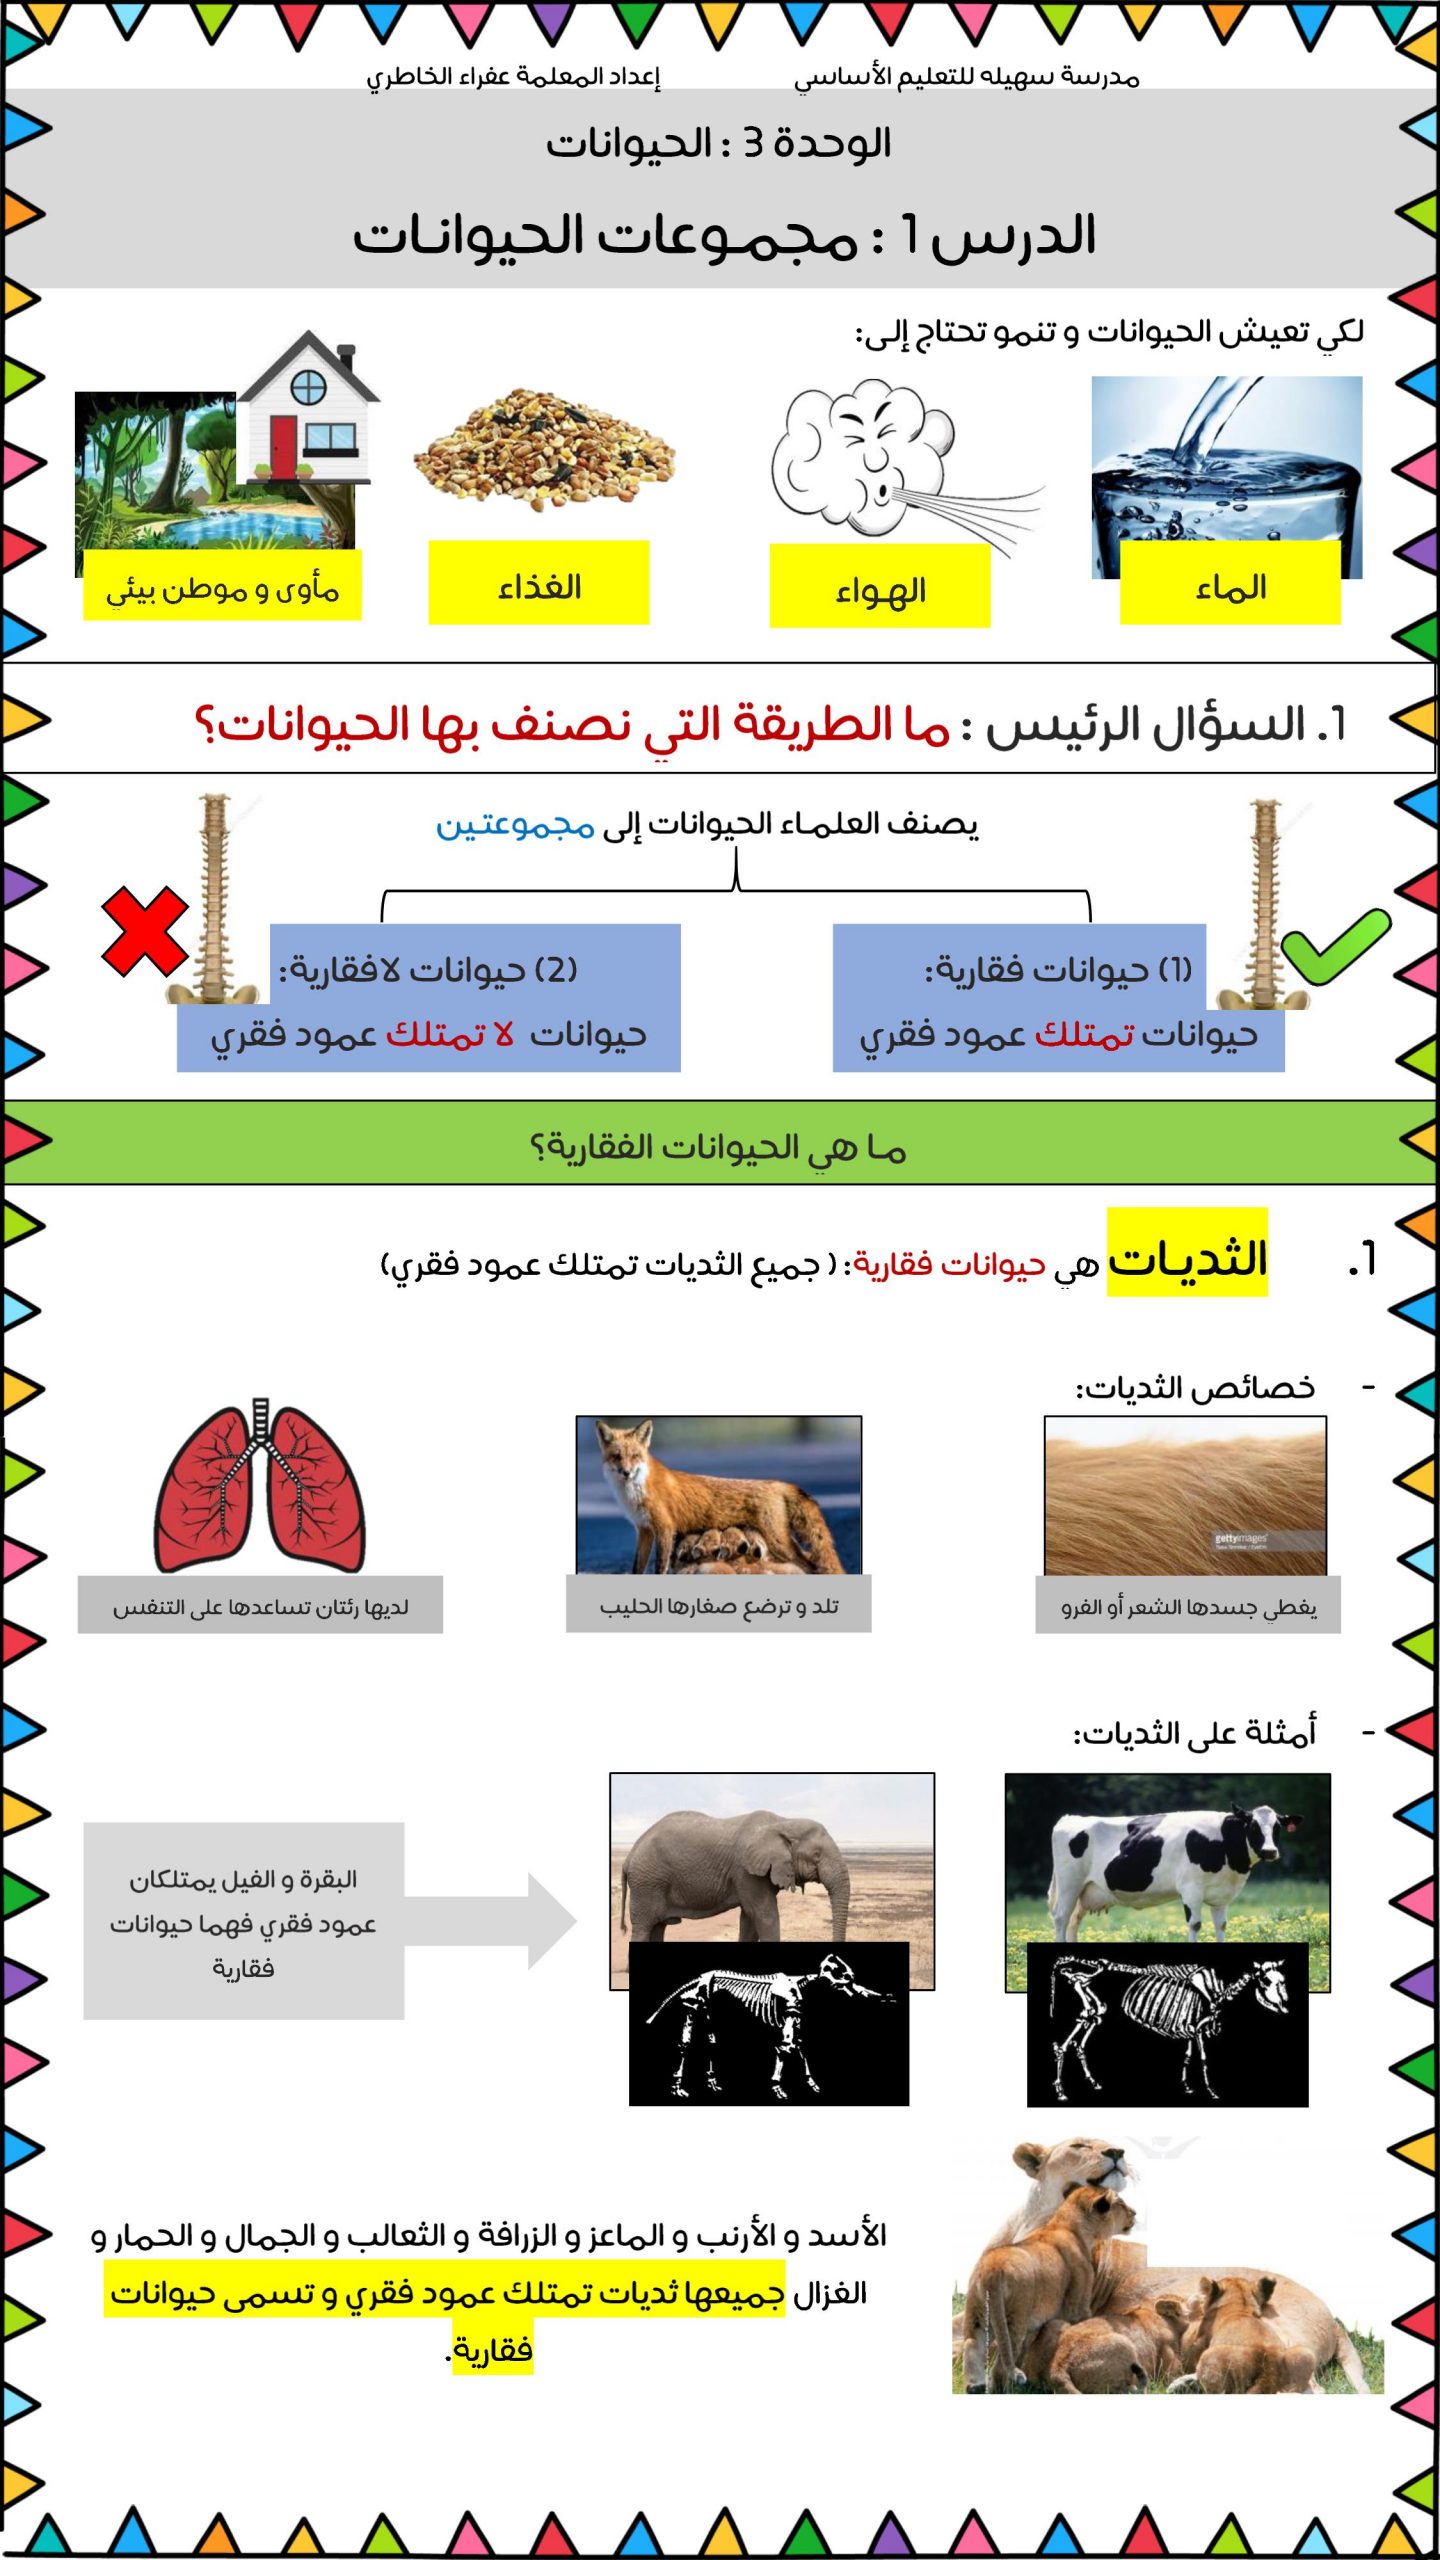 ملخص درس مجموعات الحيوانات للصف الاول مادة العلوم المتكاملة